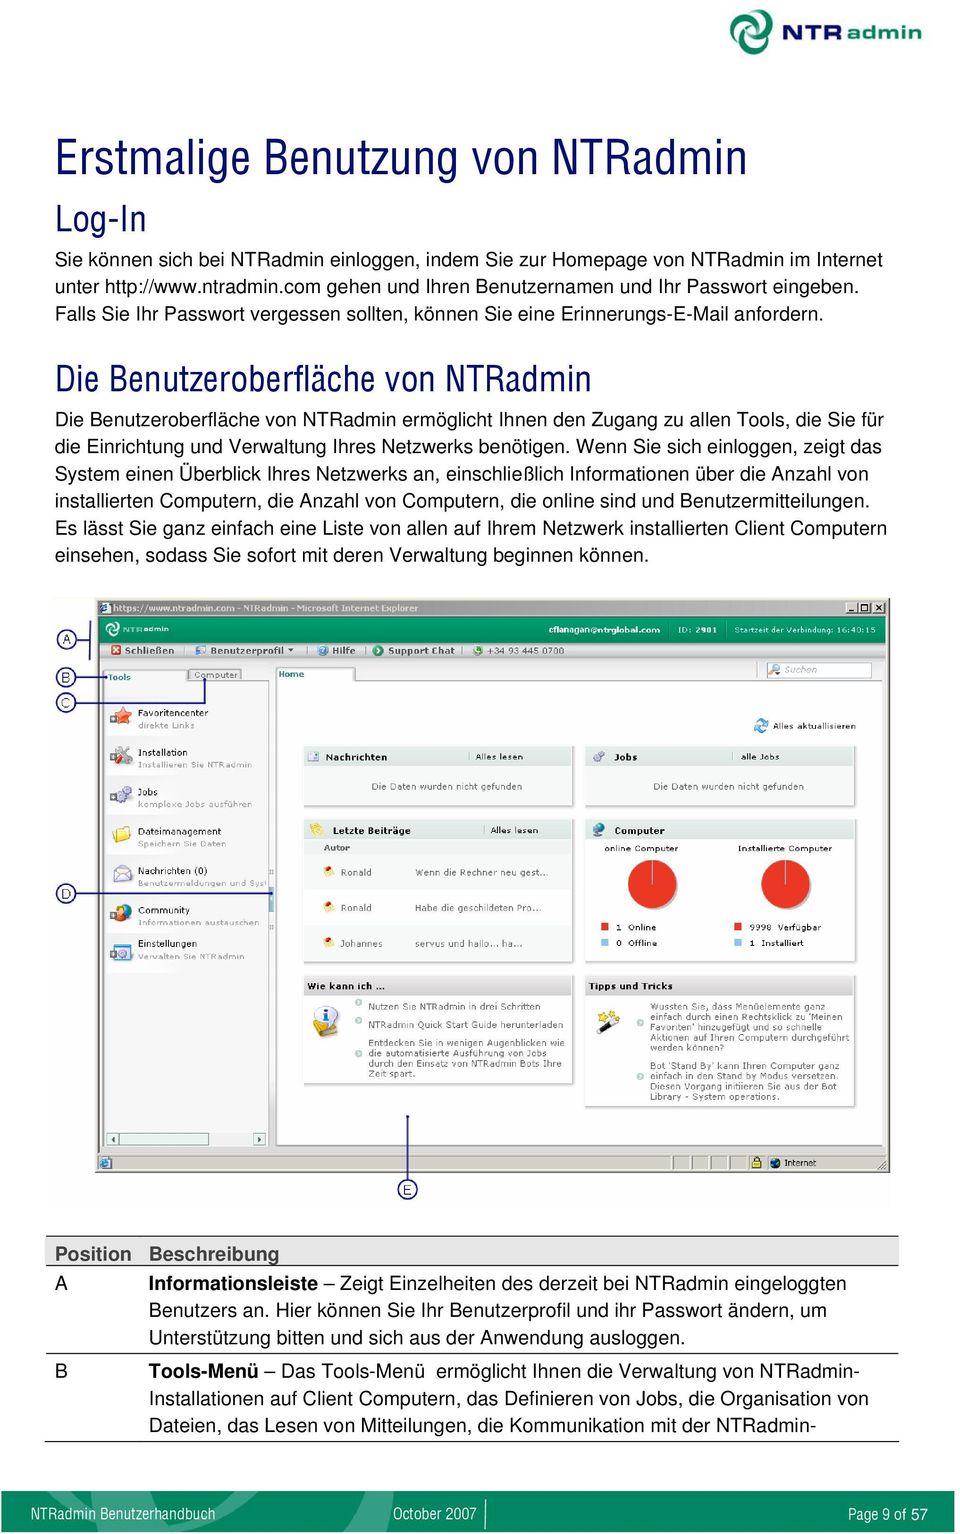 Die Benutzeroberfläche von NTRadmin Die Benutzeroberfläche von NTRadmin ermöglicht Ihnen den Zugang zu allen Tools, die Sie für die Einrichtung und Verwaltung Ihres Netzwerks benötigen.